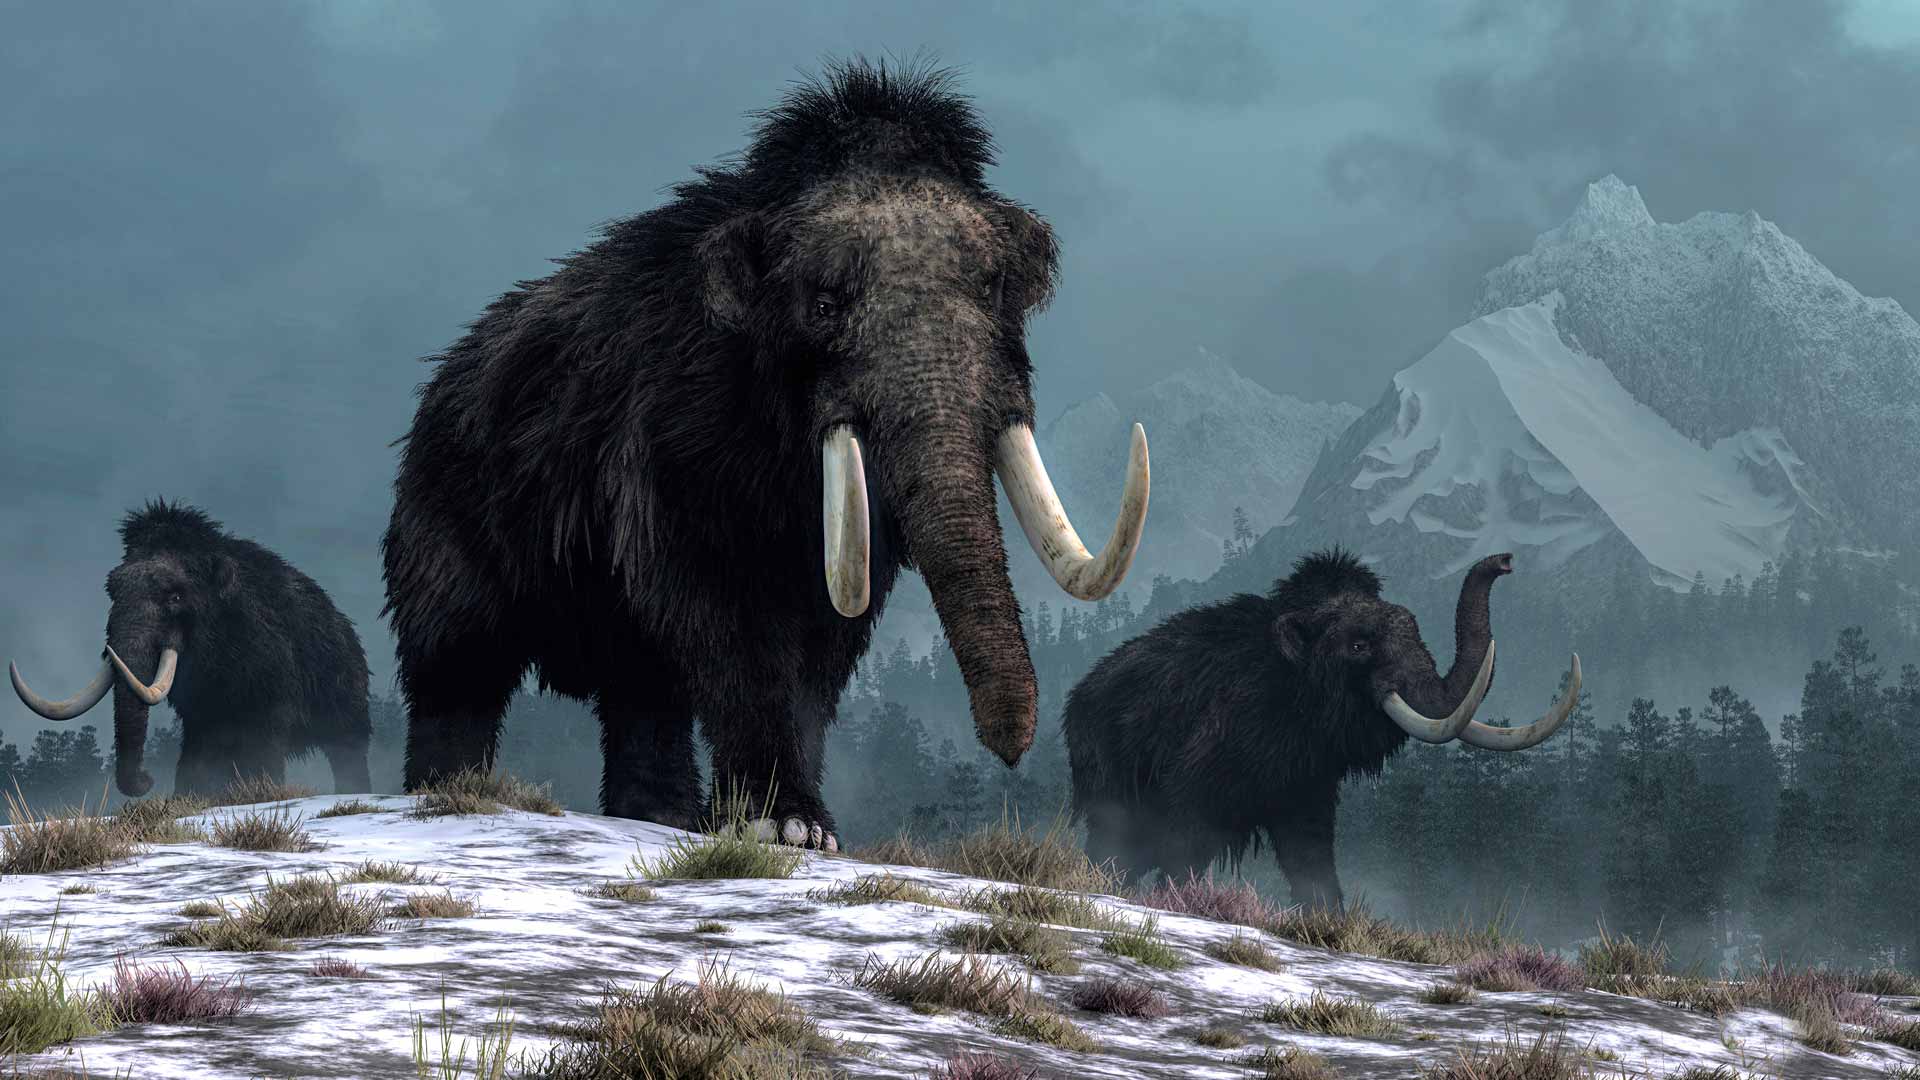 Tutkijat odottivat löytävänsä merkkejä siirtymästä maanviljelyskulttuuriin. Kuvassa mammutteja.